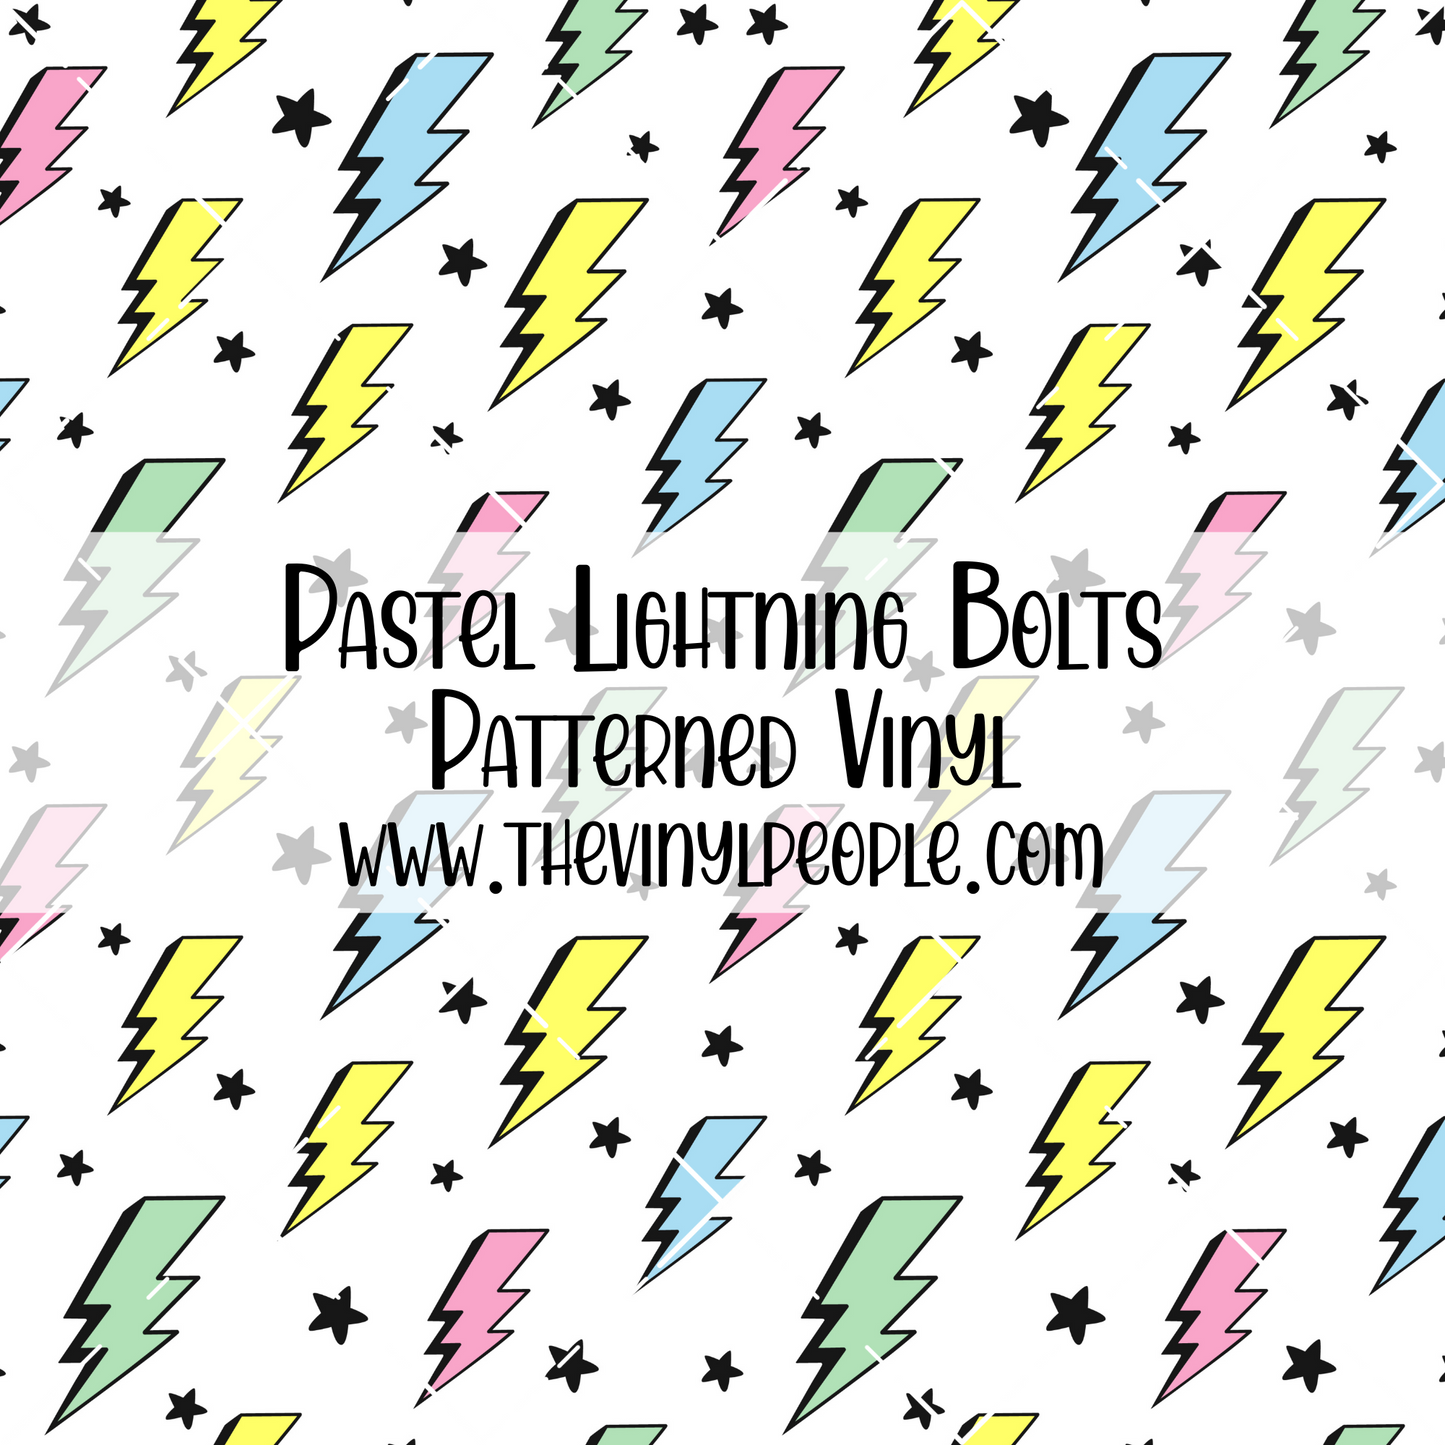 Pastel Lightning Bolts Patterned Vinyl